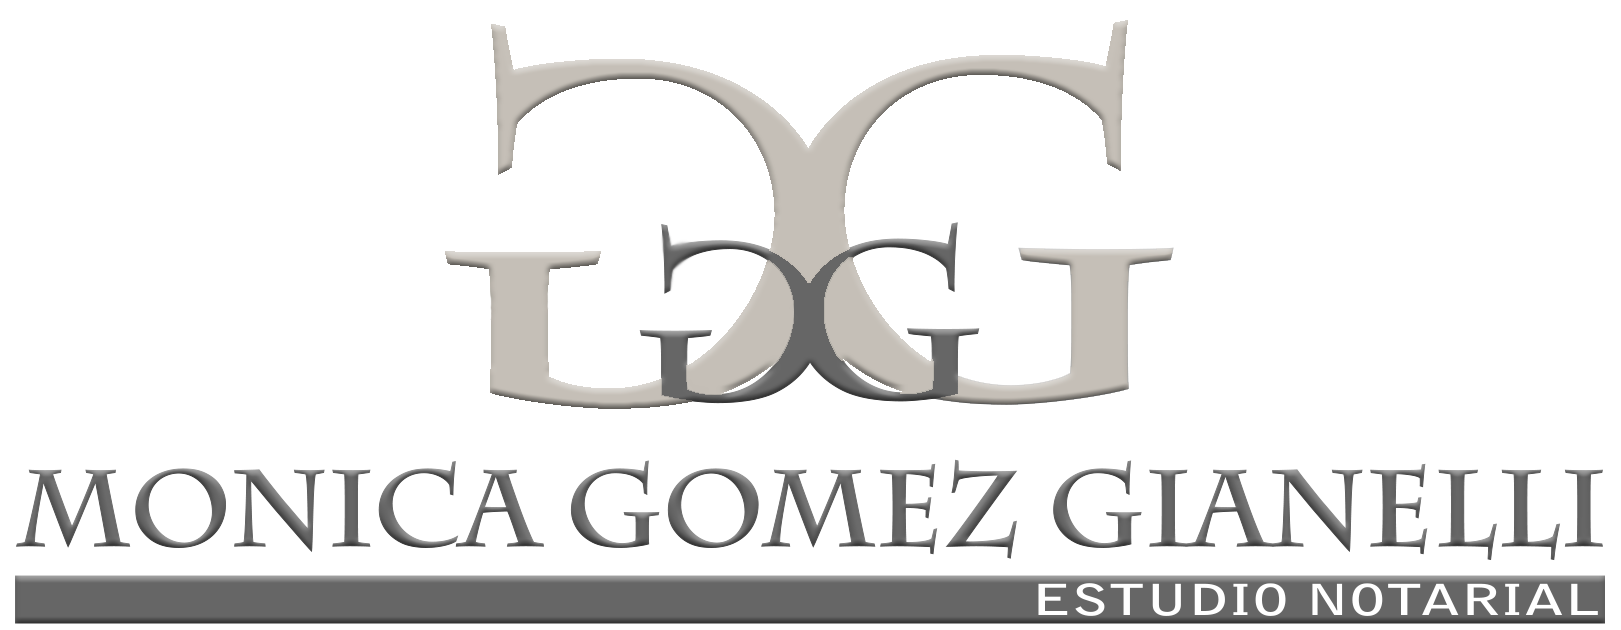 Escribania Gomez Gianelli